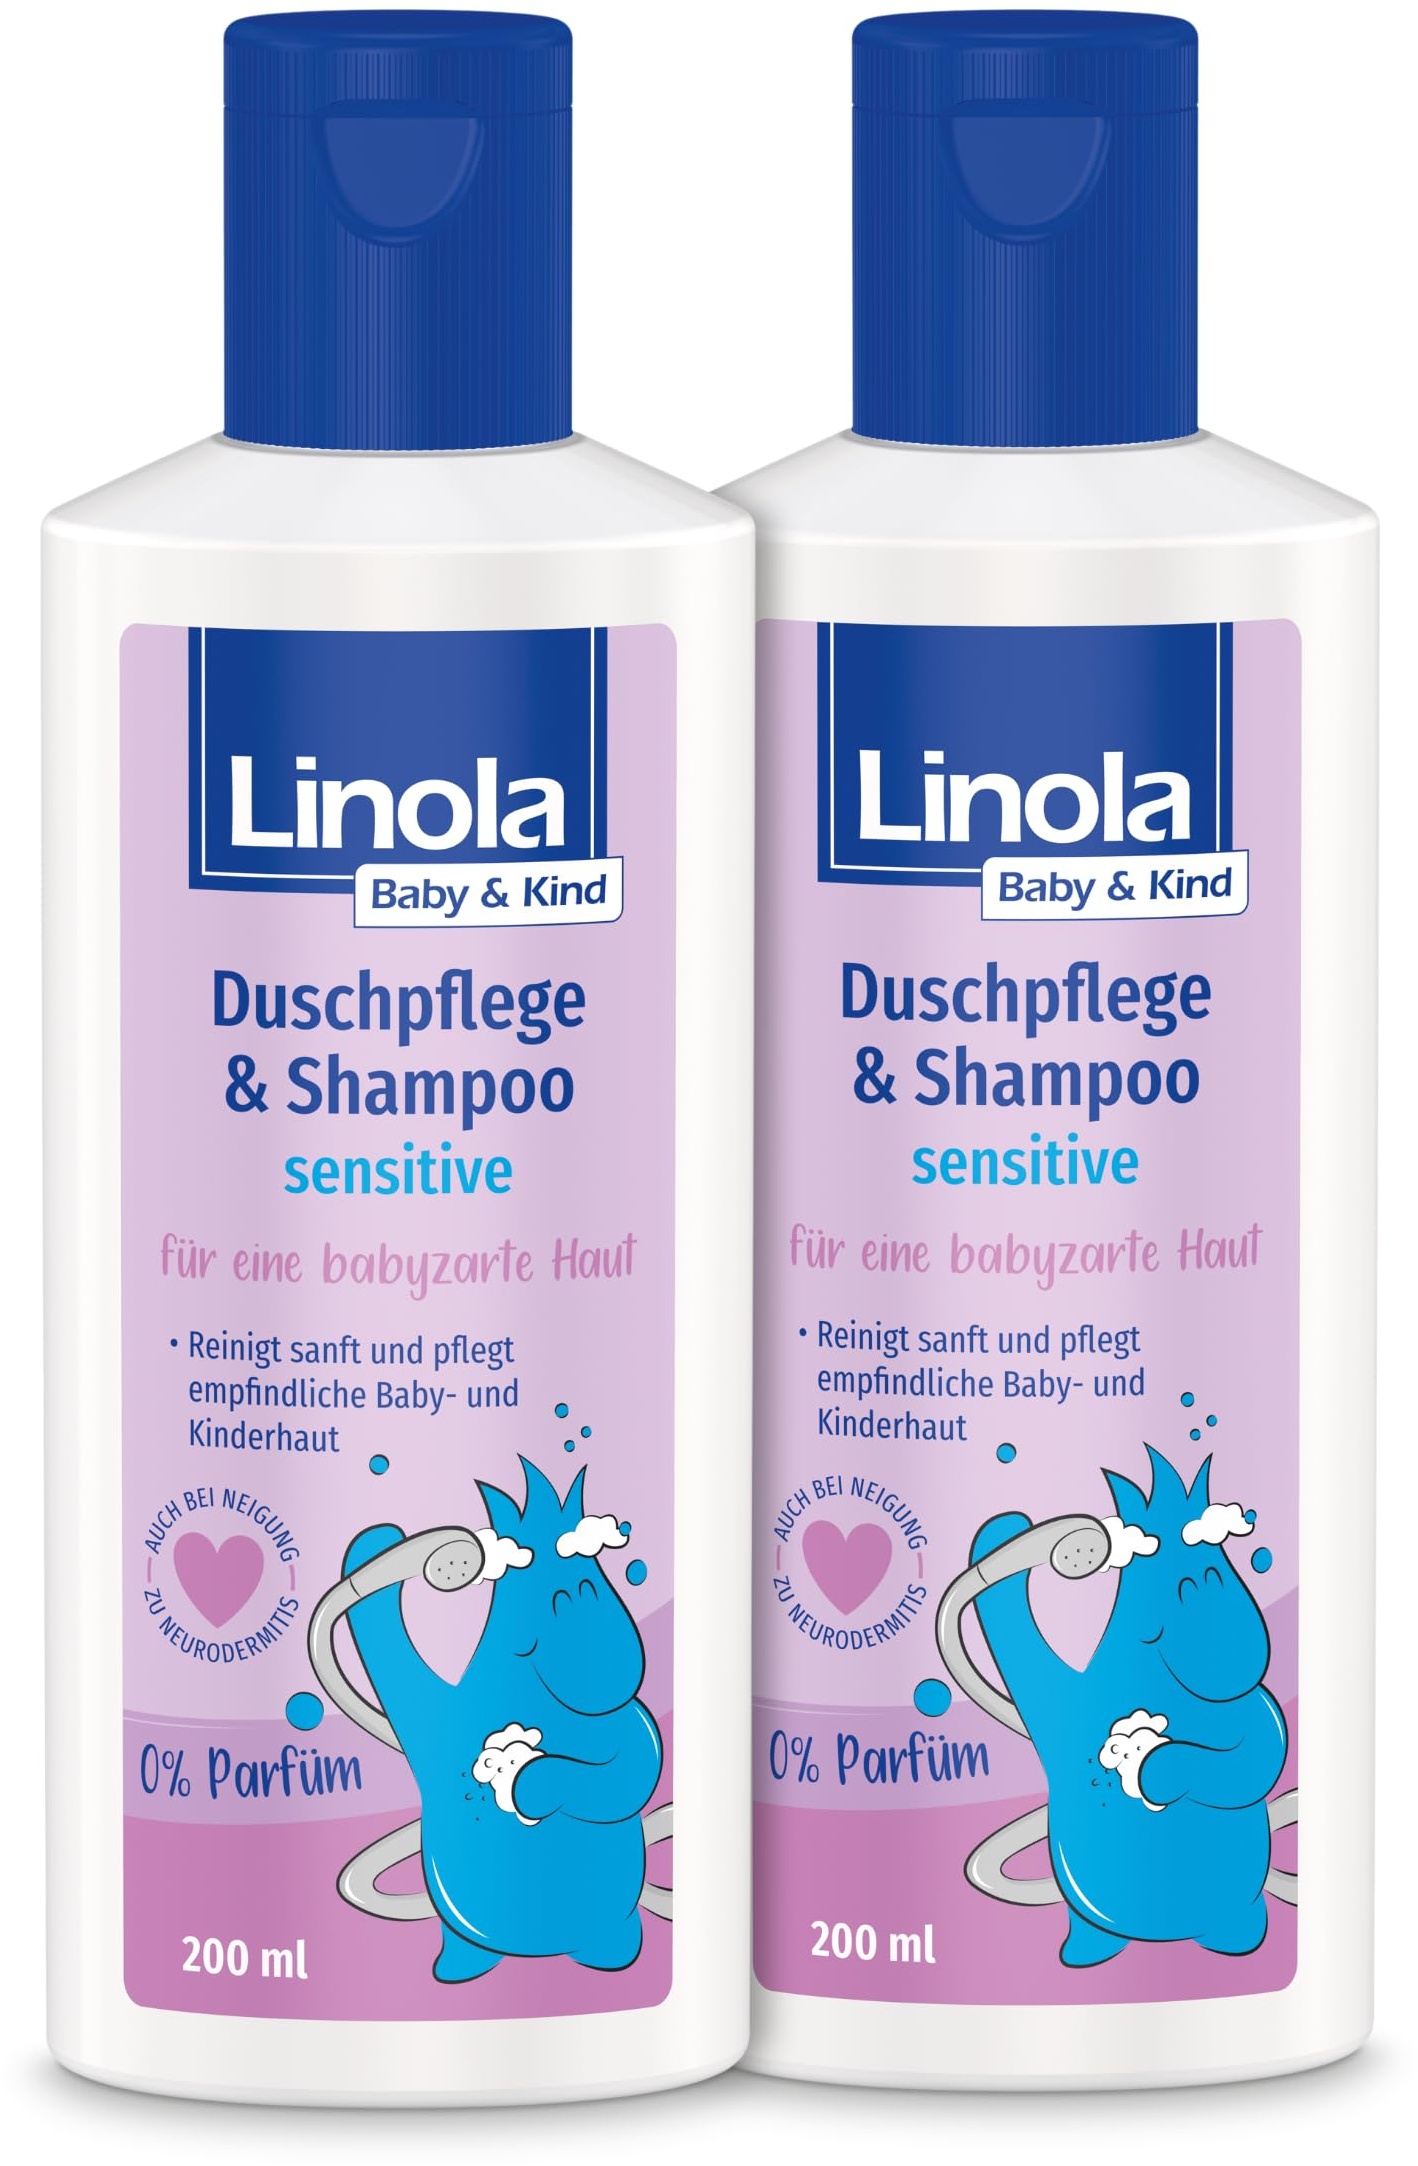 Linola Baby & Kind Duschpflege & Shampoo sensitive - 2 x 200 ml - Für Haut und Haar | 2-in-1 Duschgel & Shampoo für sensible Baby- und Kinderhaut